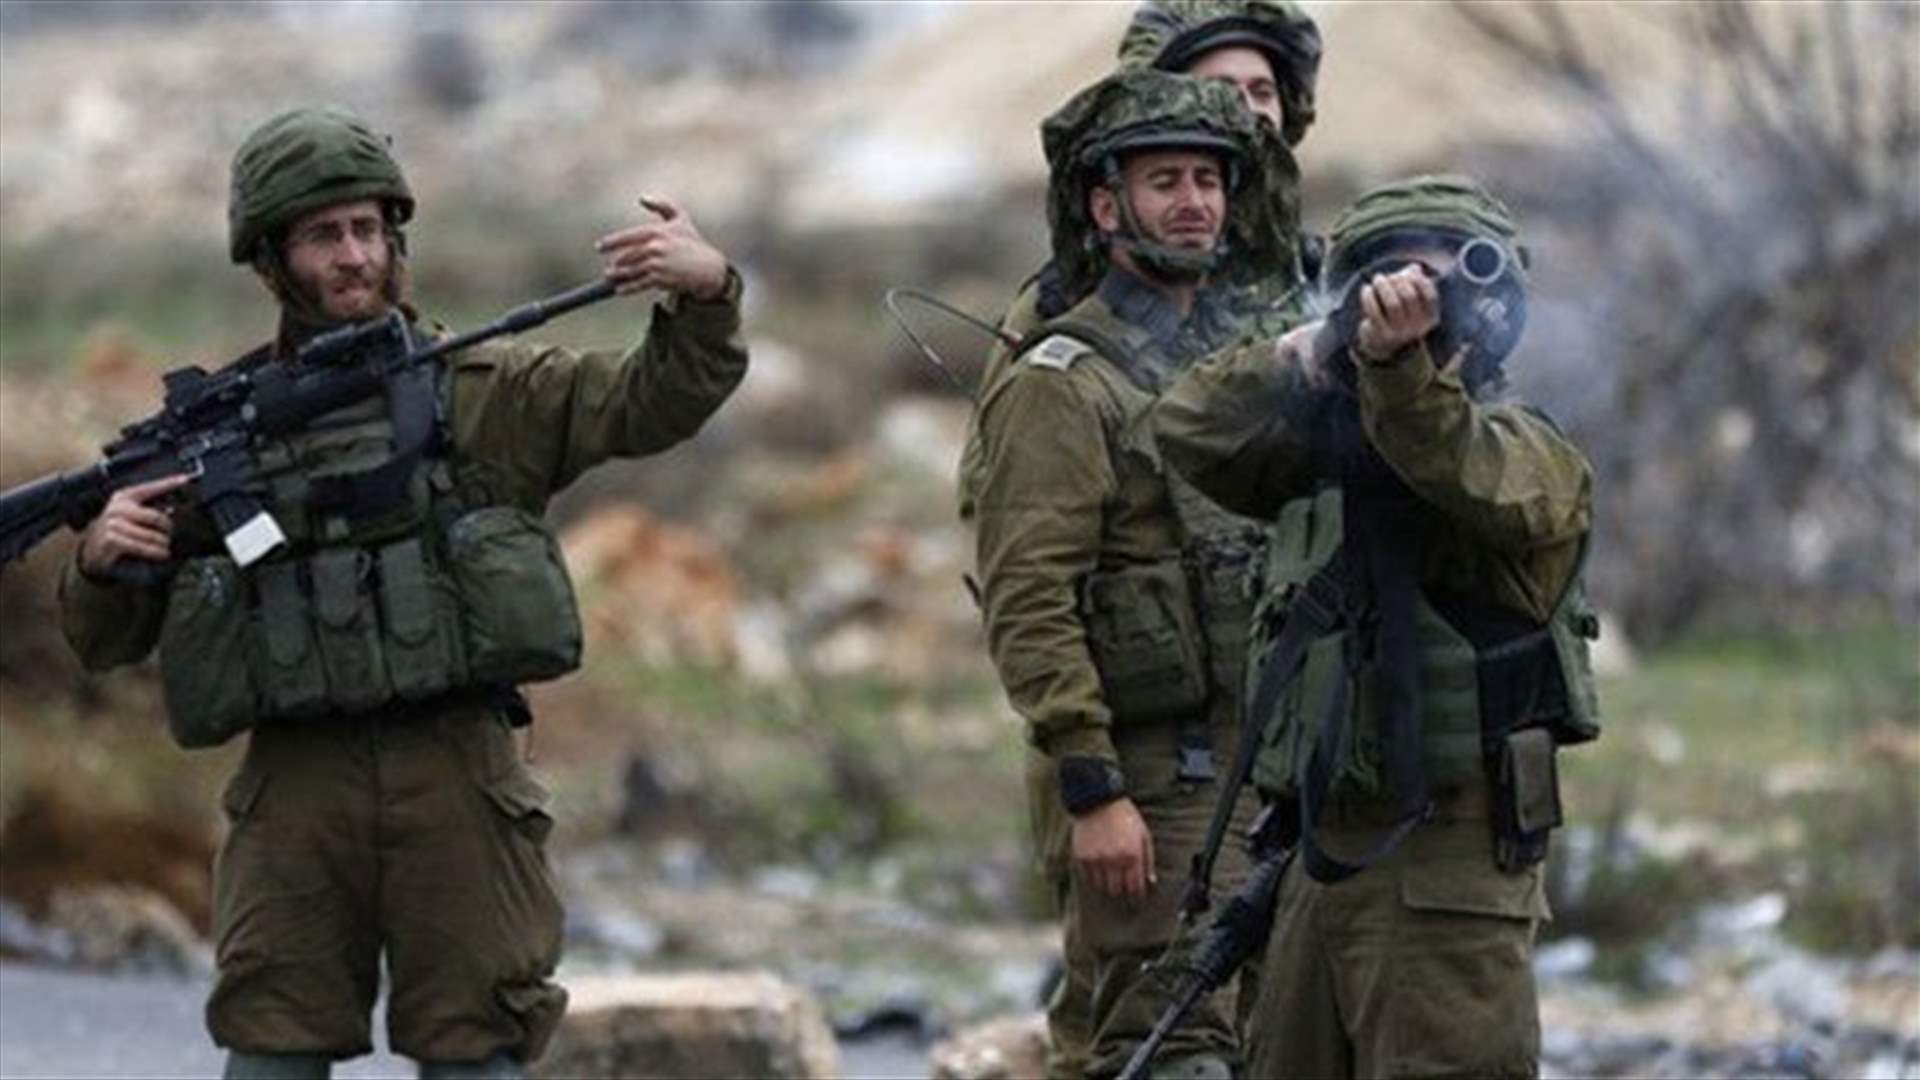 مقتل فلسطيني برصاص الجيش الإسرائيلي في شمال الضفة الغربية المحتلة